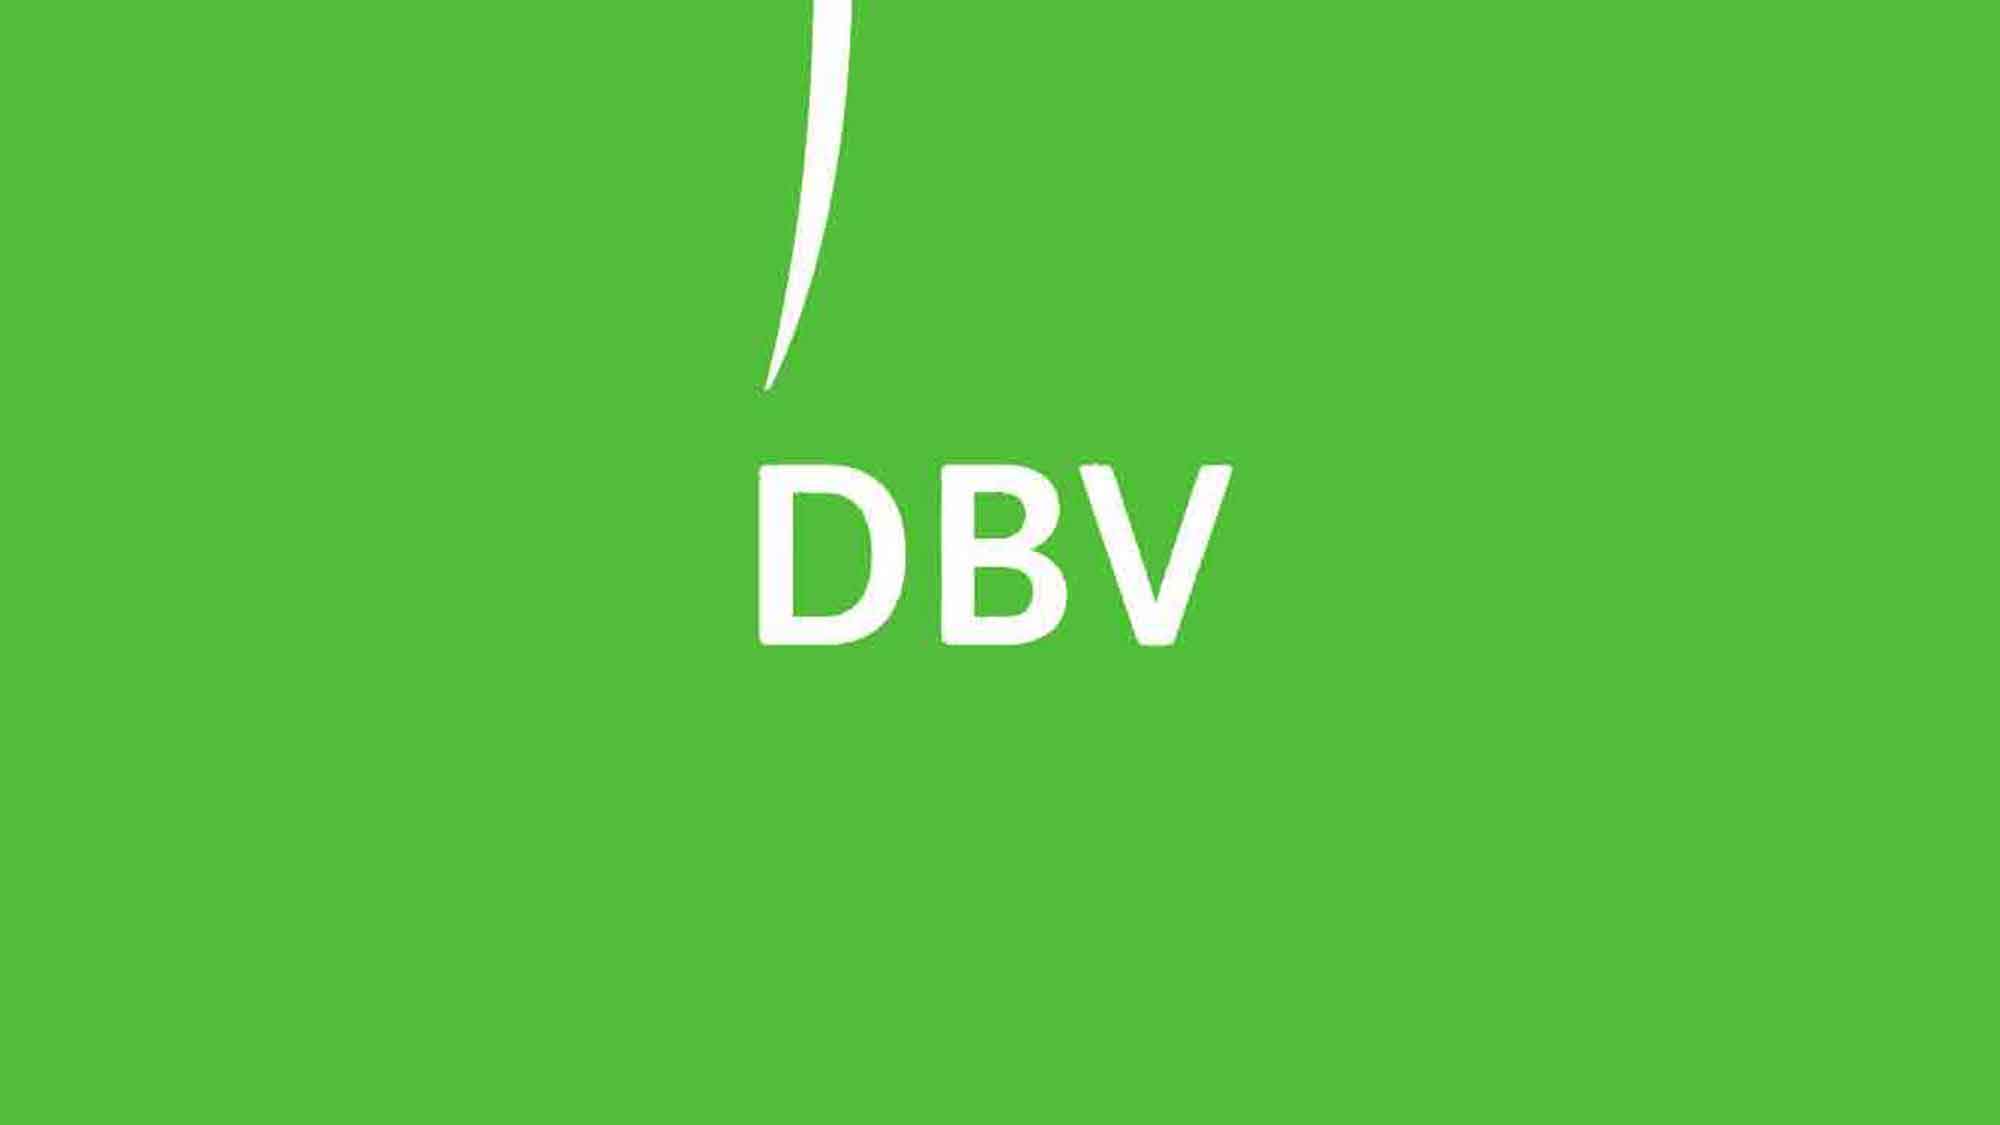 Deutscher Bauernverband (DBV): SUR Entscheidung im Sinne der Ernährungssicherung